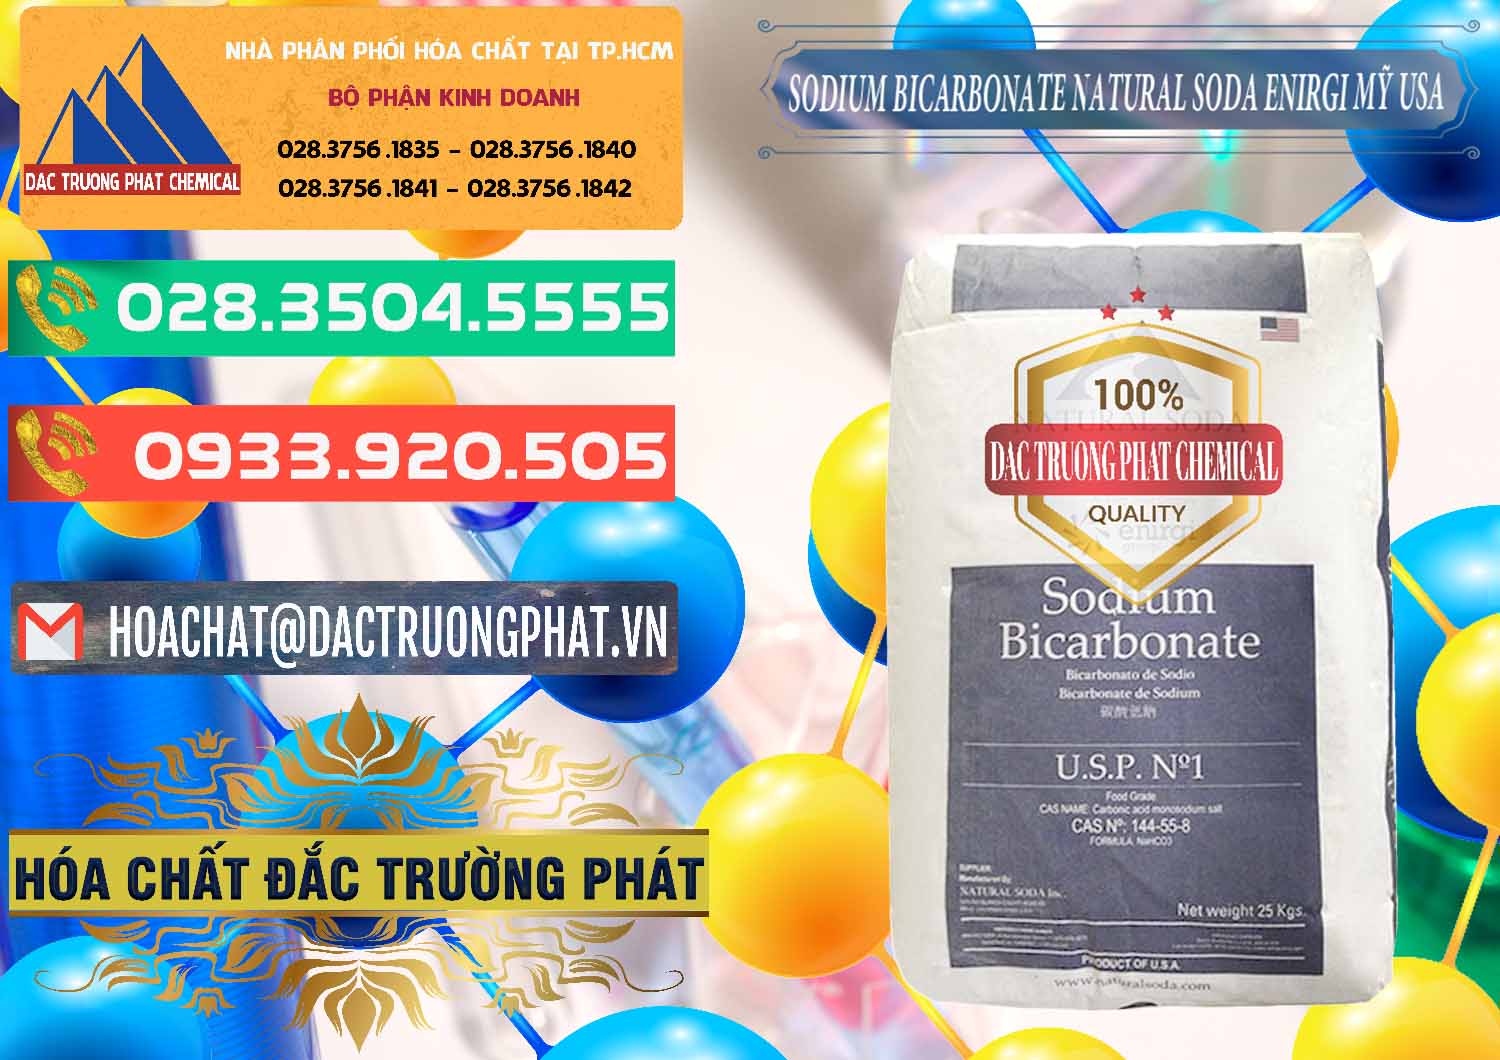 Nhà cung cấp ( bán ) Sodium Bicarbonate – Bicar NaHCO3 Food Grade Natural Soda Enirgi Mỹ USA - 0257 - Cung cấp - nhập khẩu hóa chất tại TP.HCM - congtyhoachat.com.vn